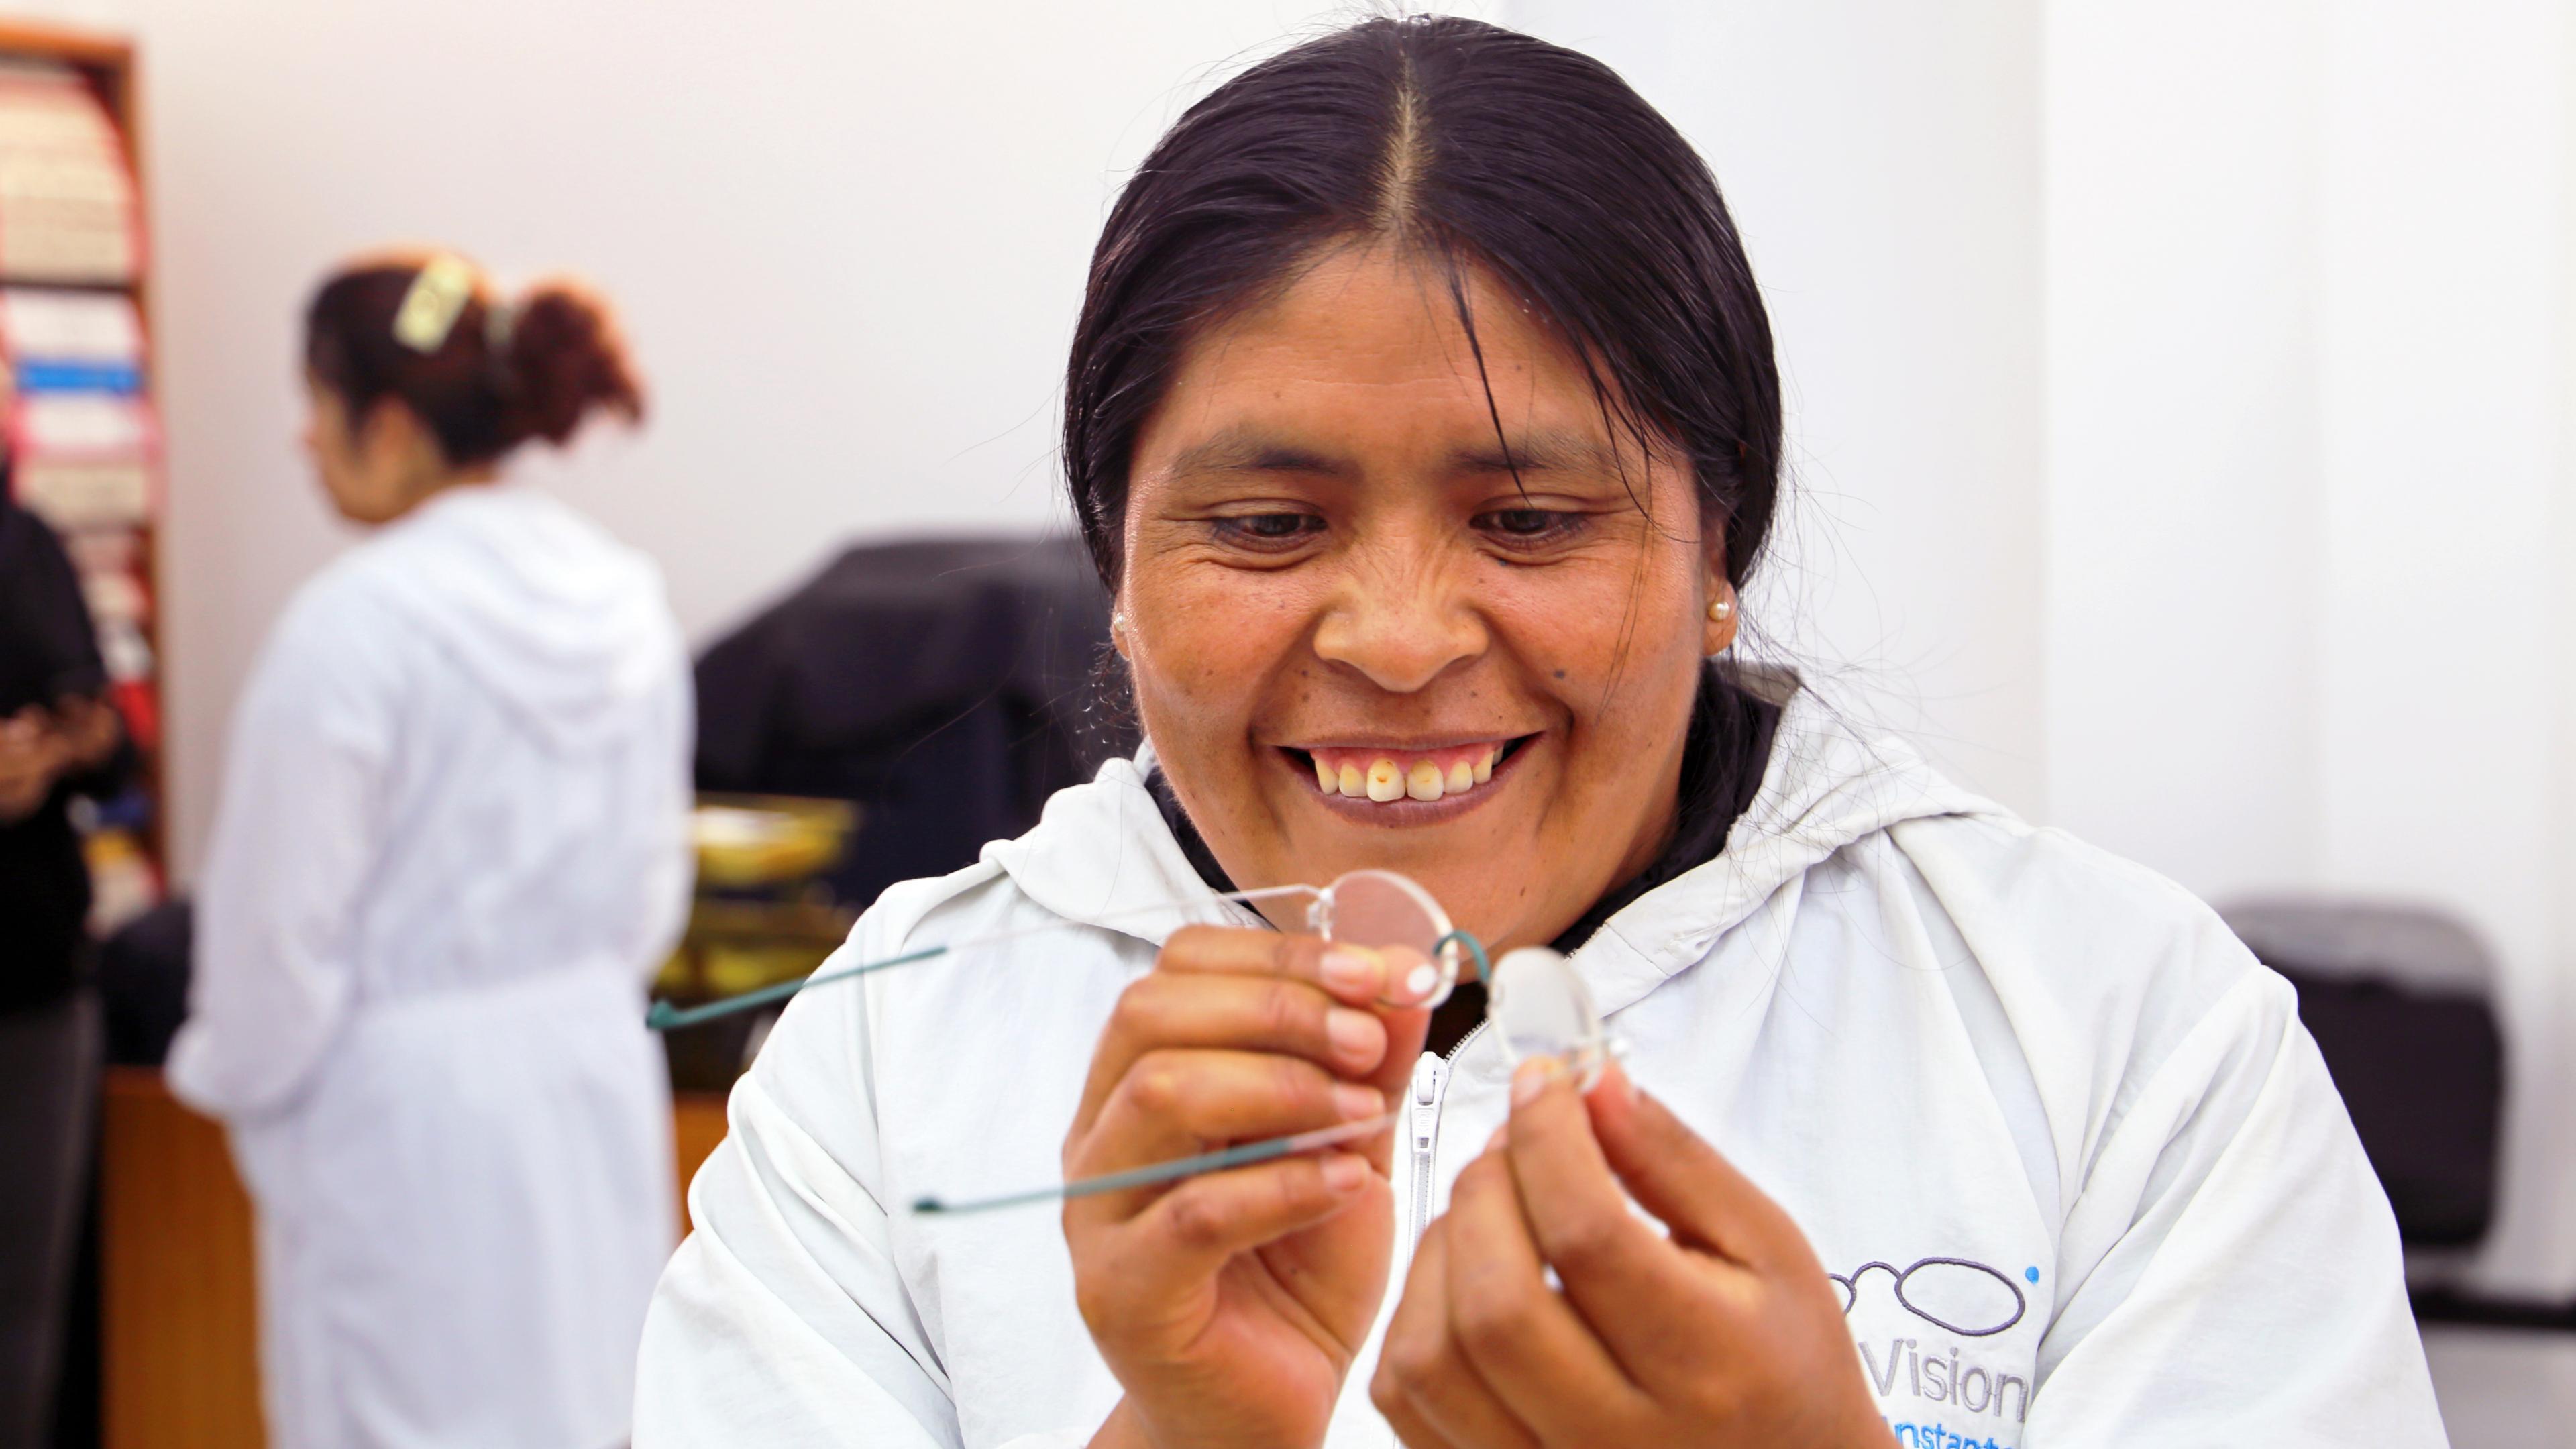 Peruanische Frau mit weißer Kleidung fertigt eine Brille